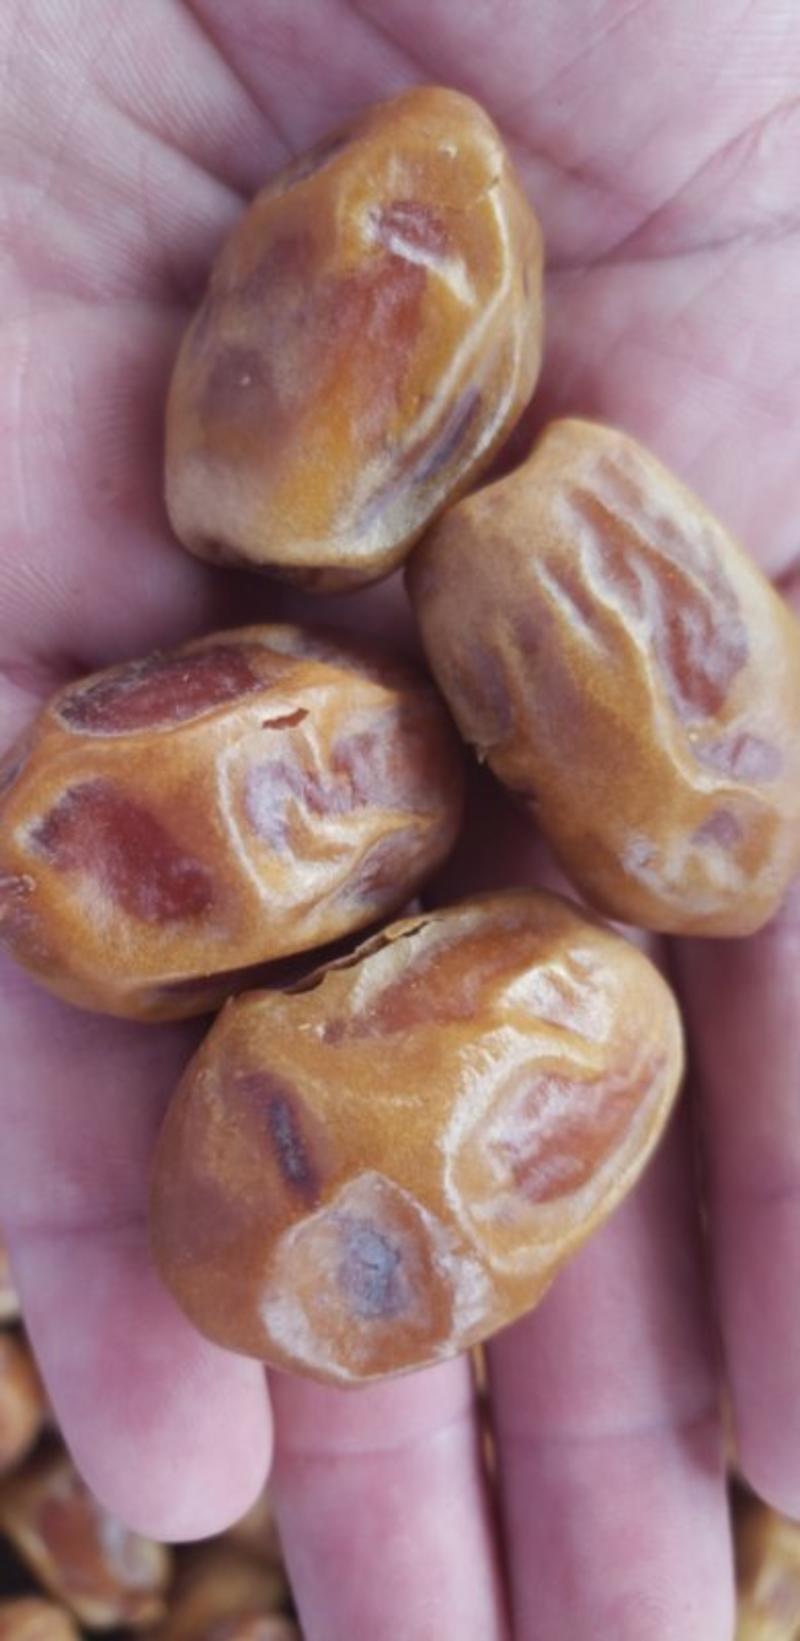 网红伊拉克黄椰枣大颗粒对接代发多种合作模式价格优势大